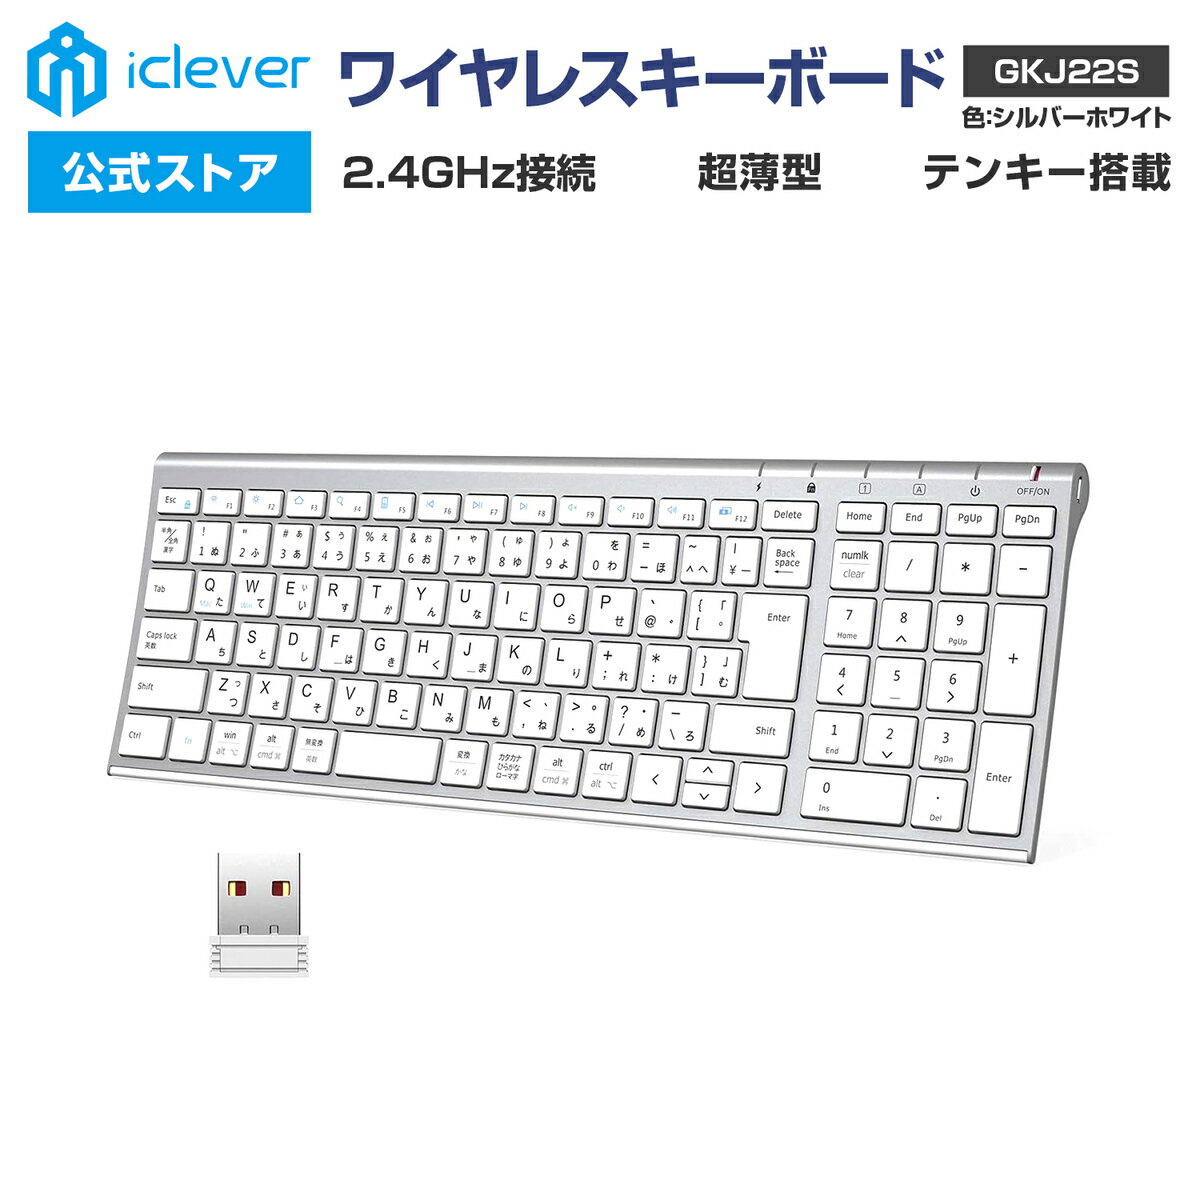 【iClever公式】 ＜スーパーSALE 30％OFF＞ ワイヤレスキーボード GKJ22S 人気 話題 2.4GHz接続 USBレシーバー接続 テンキー搭載 日本語配列 超薄型 パンタグラフ式 スタイリッシュ ガジェット…